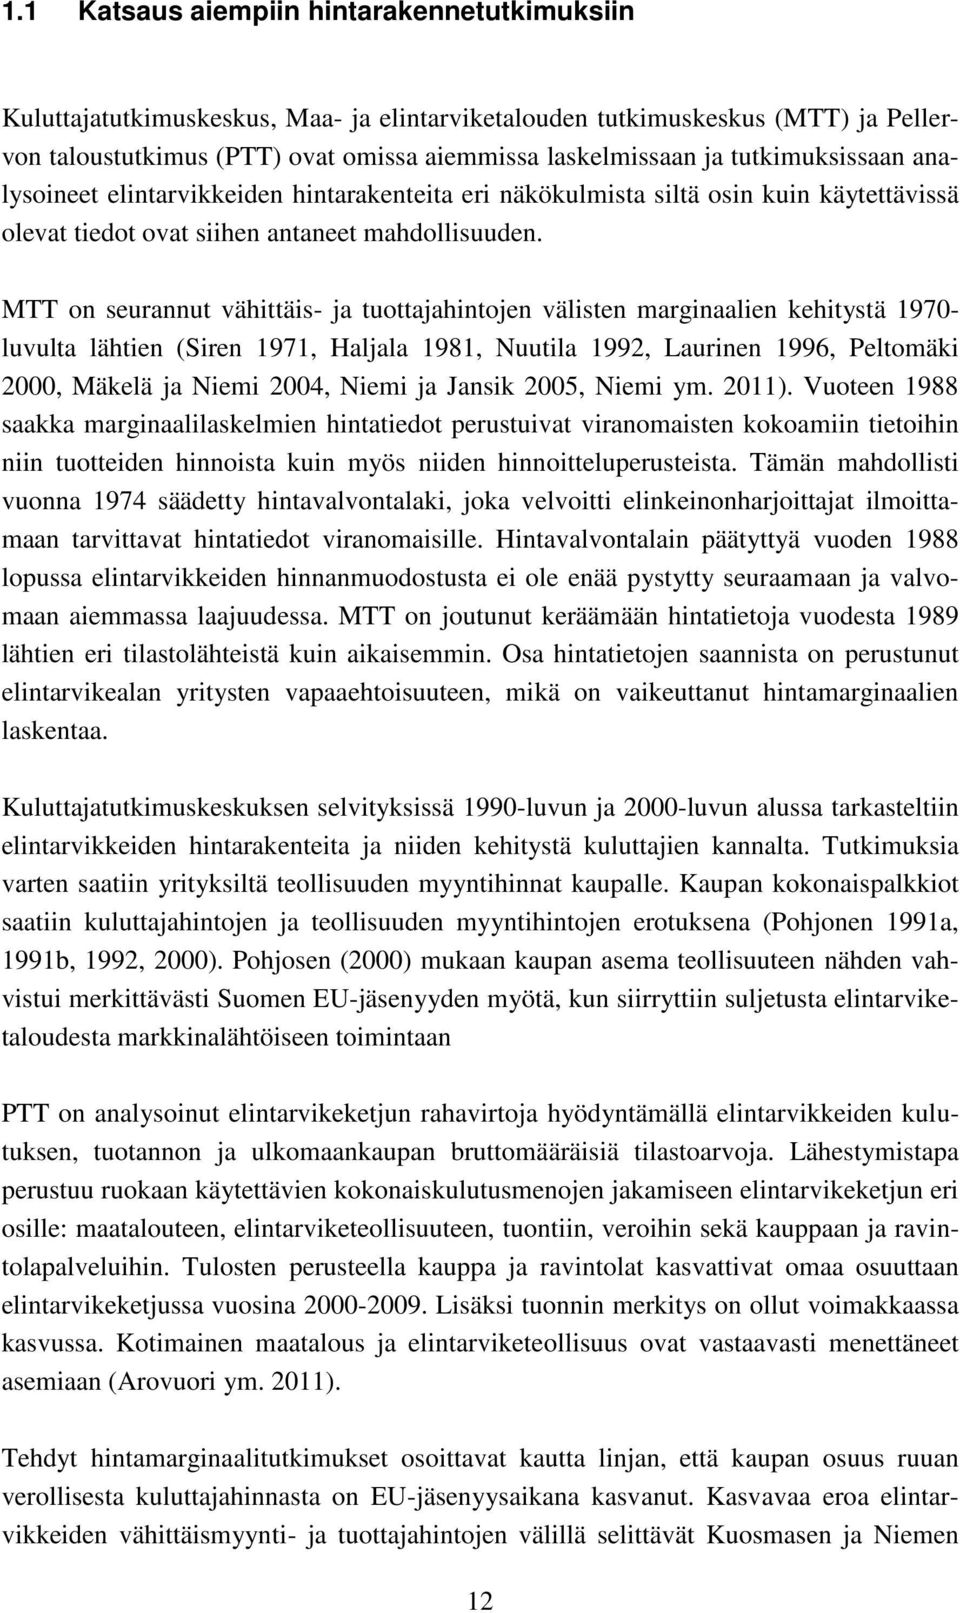 MTT on seurannut vähittäis- ja tuottajahintojen välisten marginaalien kehitystä 1970- luvulta lähtien (Siren 1971, Haljala 1981, Nuutila 1992, Laurinen 1996, Peltomäki 2000, Mäkelä ja Niemi 2004,